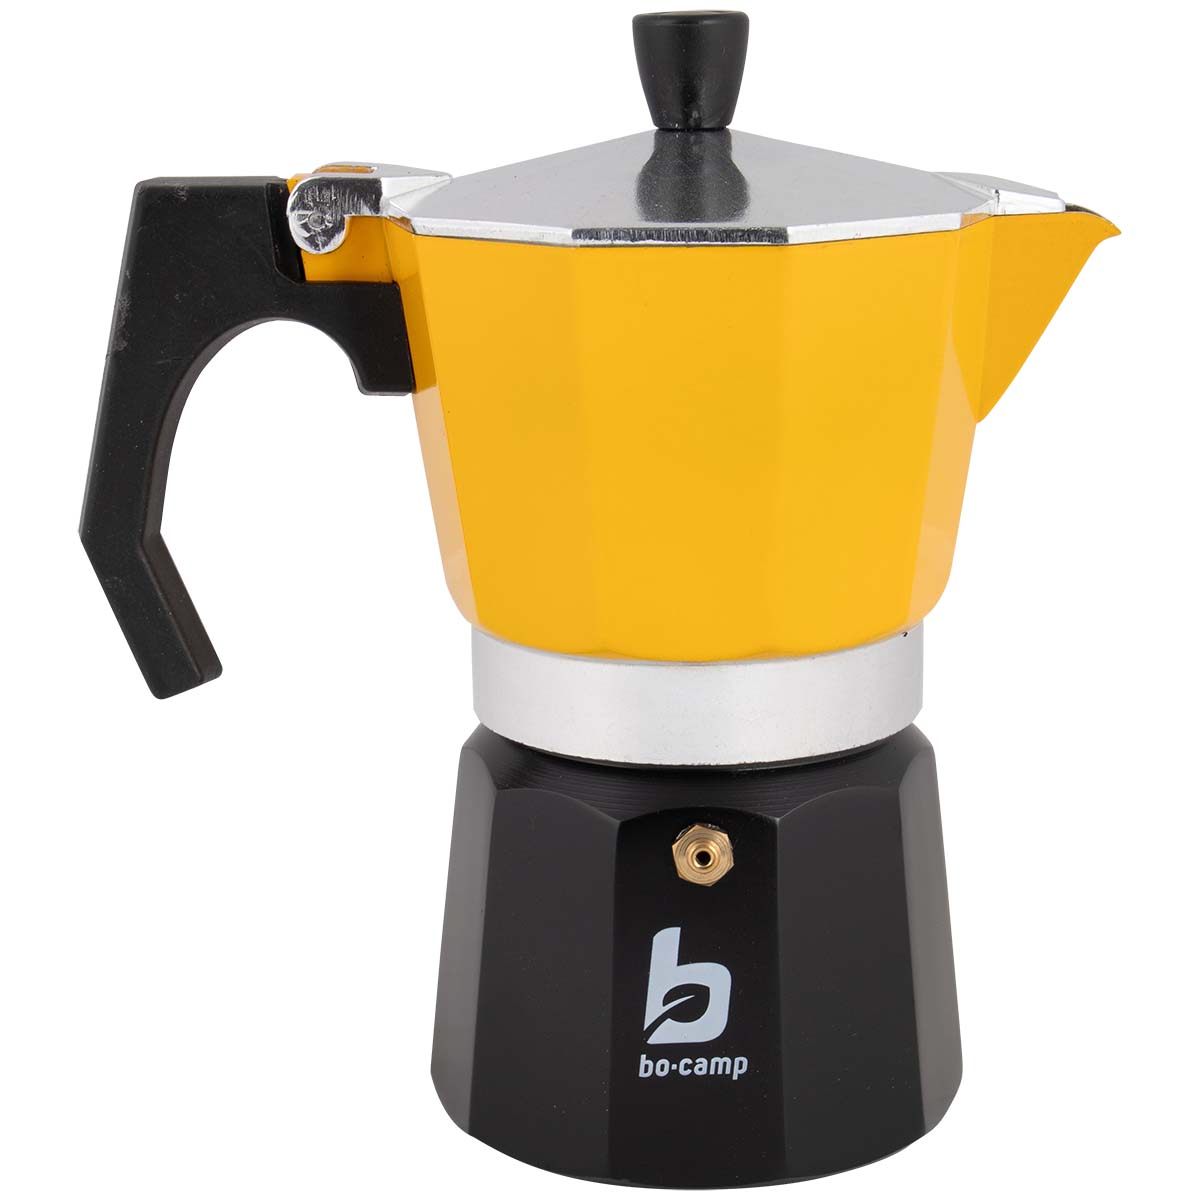 2200522 Een hippe aluminium koffiezetter met een stoere look. Deze espresso maker is goed voor 6 kopjes koffie. Met deze percolator kan er binnen enkele minuten een kop koffie worden gezet. Vul het onderstel met water en daarboven in het houdertje komt het koffiepoeder. Wanneer het water aan de kook raakt, ontstaat er een heerlijke kop koffie. Bovendien voorzien van een handige schenktuit.